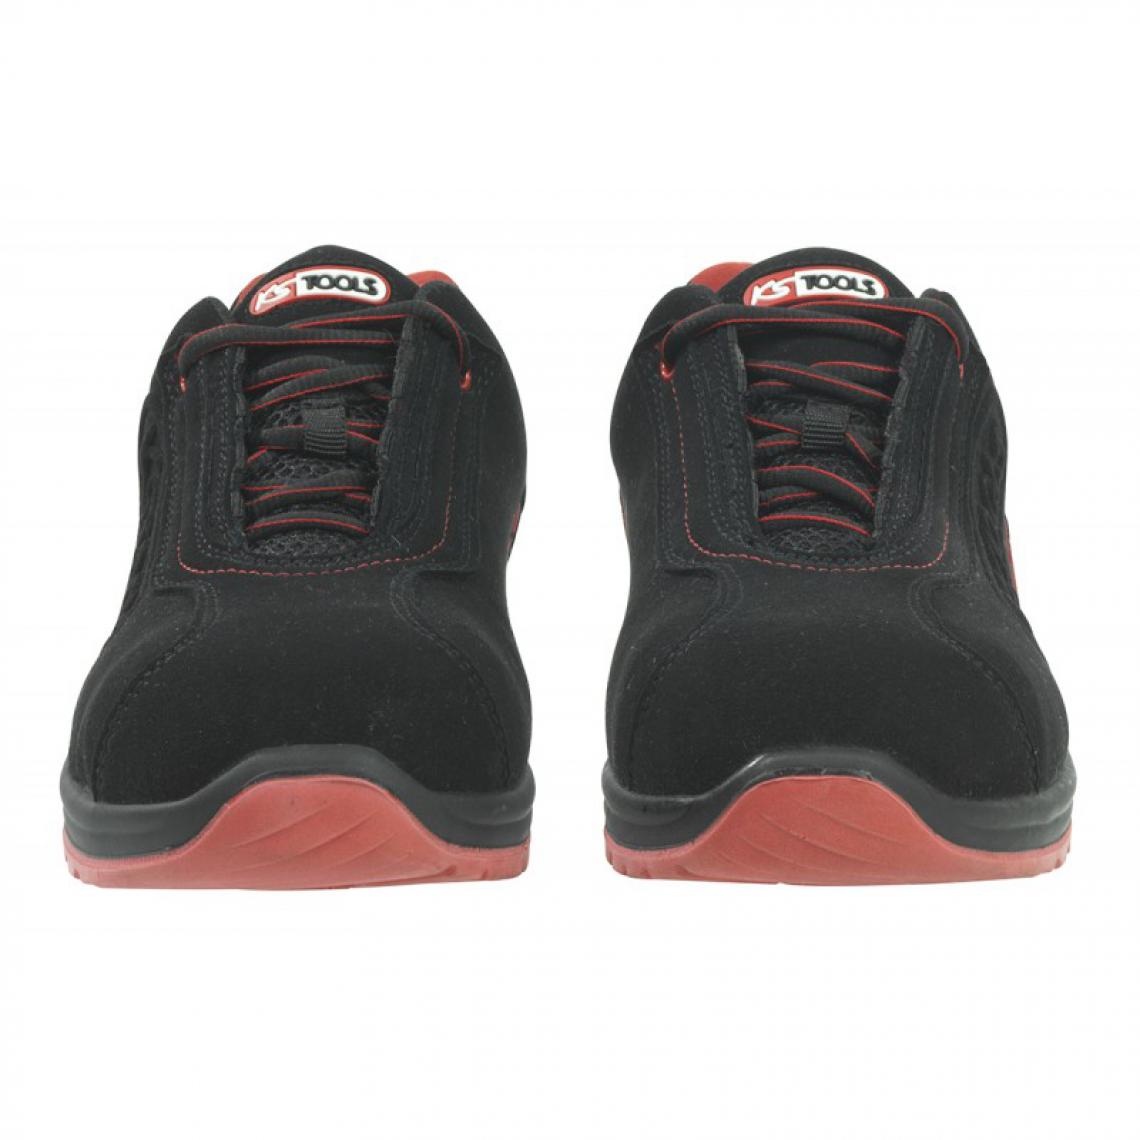 Kstools - Chaussures de sécurité KSTOOLS Couleur noire rouge taille 41 - Equipement de Protection Individuelle